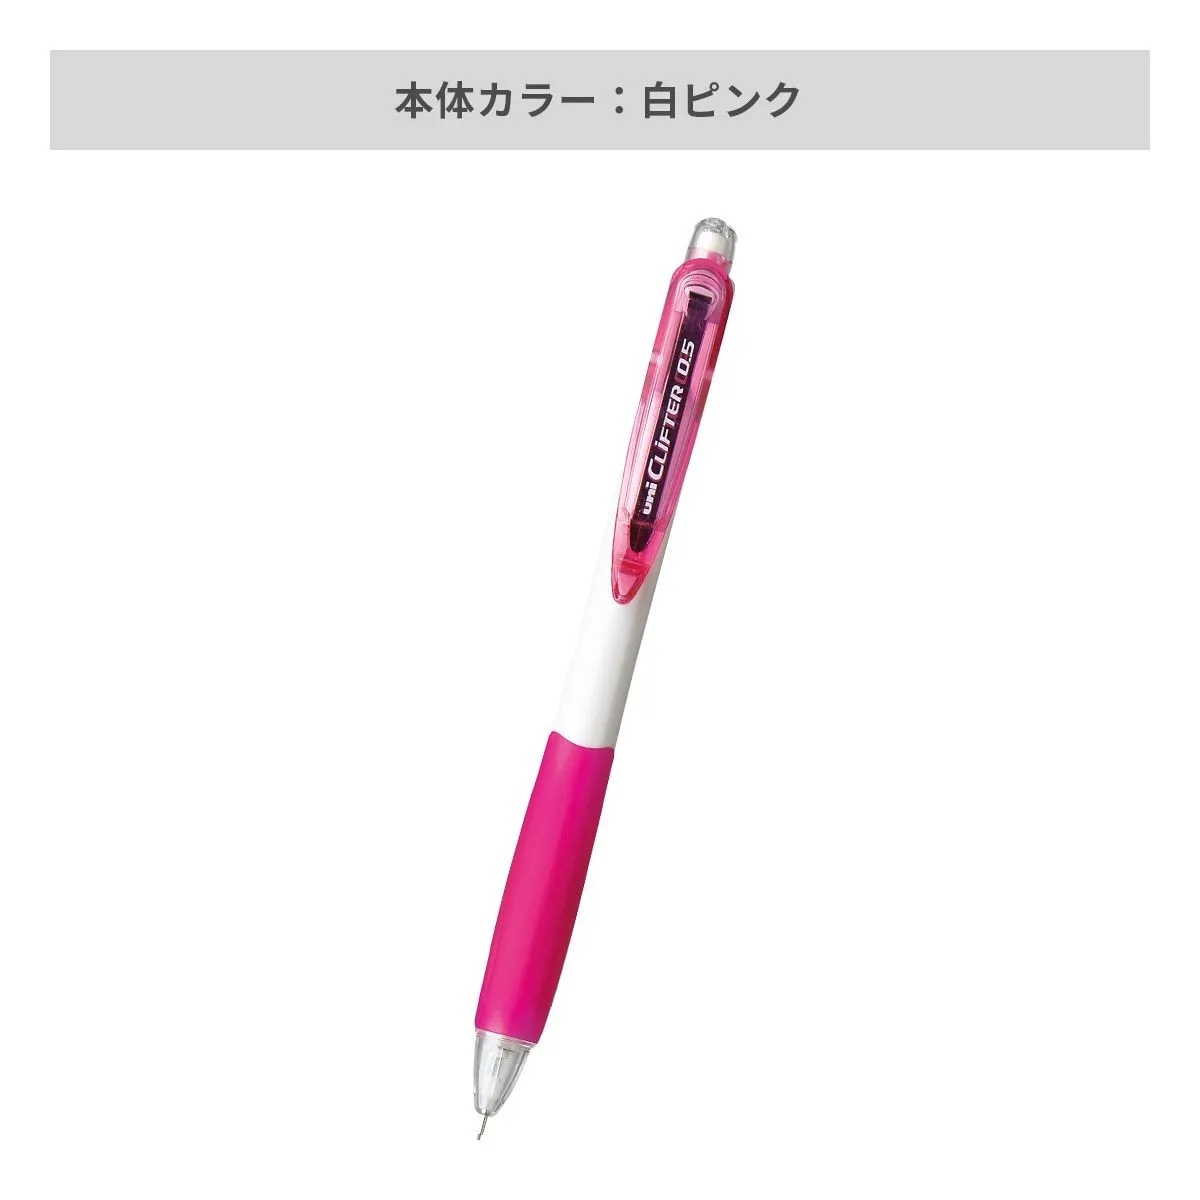 三菱鉛筆 クリフター シャープペン 白軸 0.5mm【名入れシャーペン / インクジェット印刷】 画像3